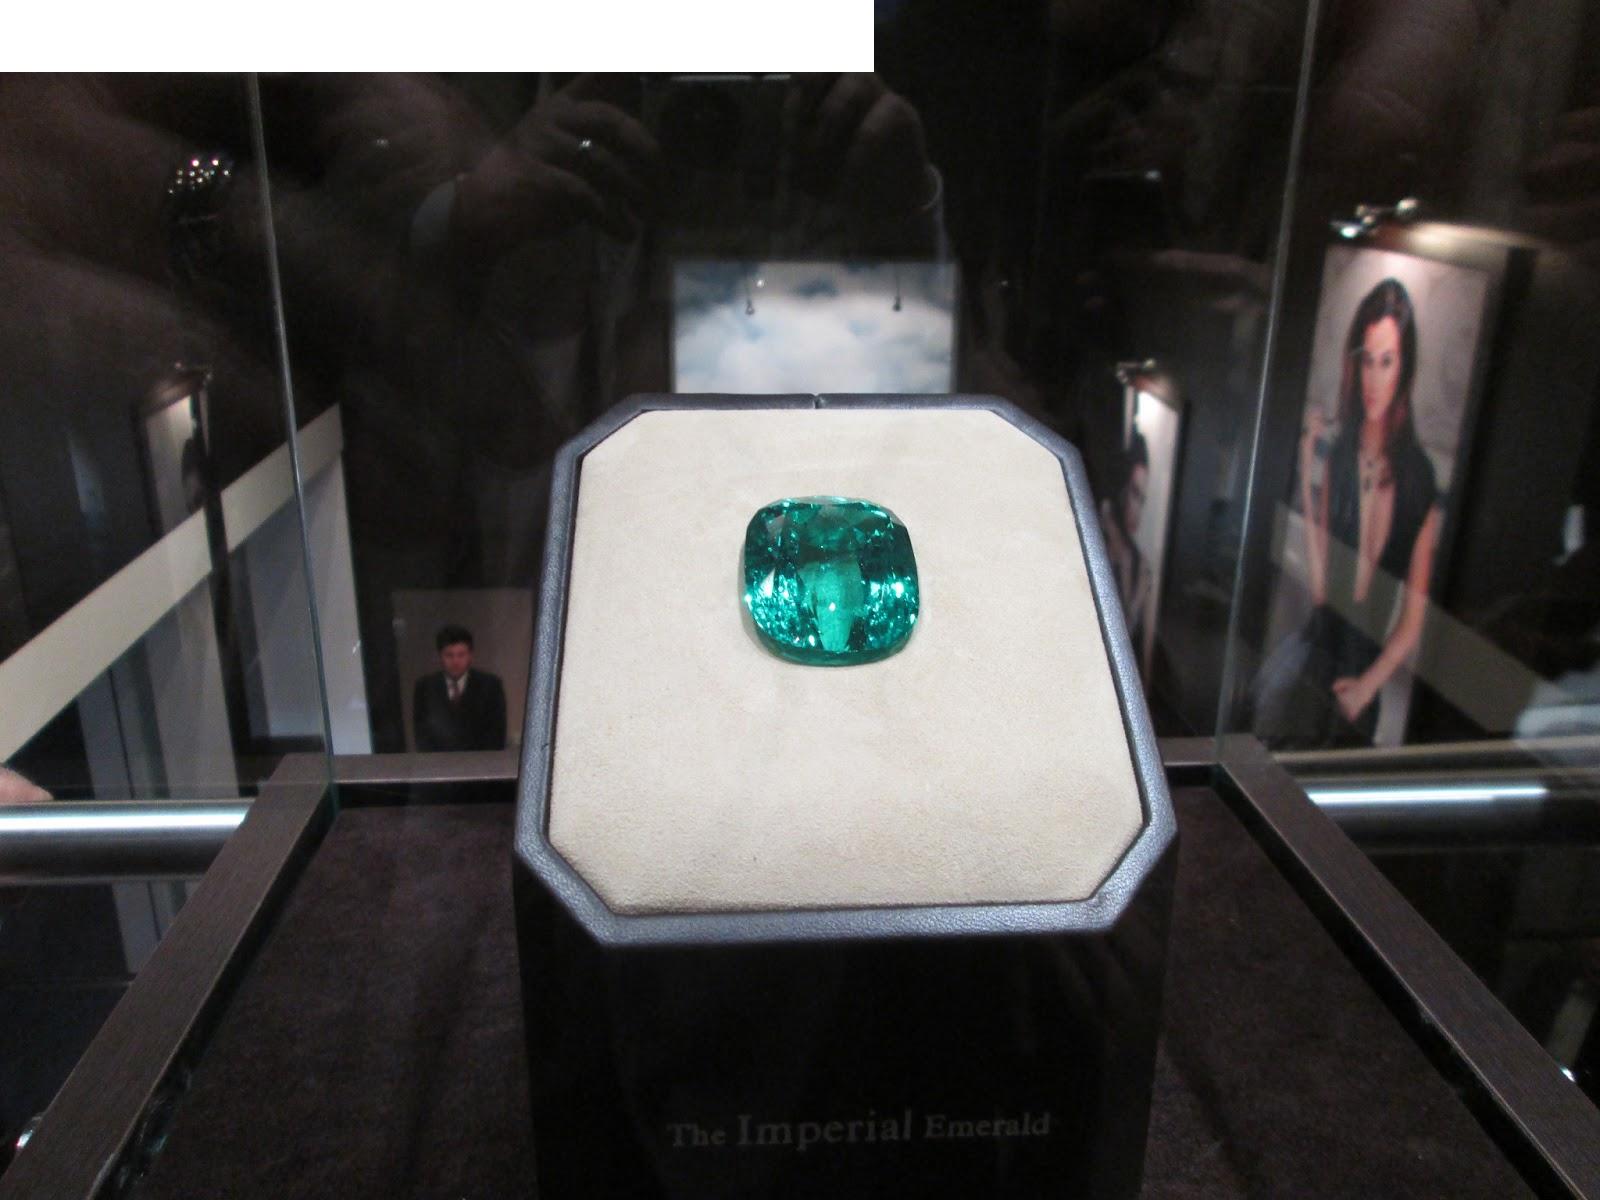 "Imperial Emerald" mu 206 carats